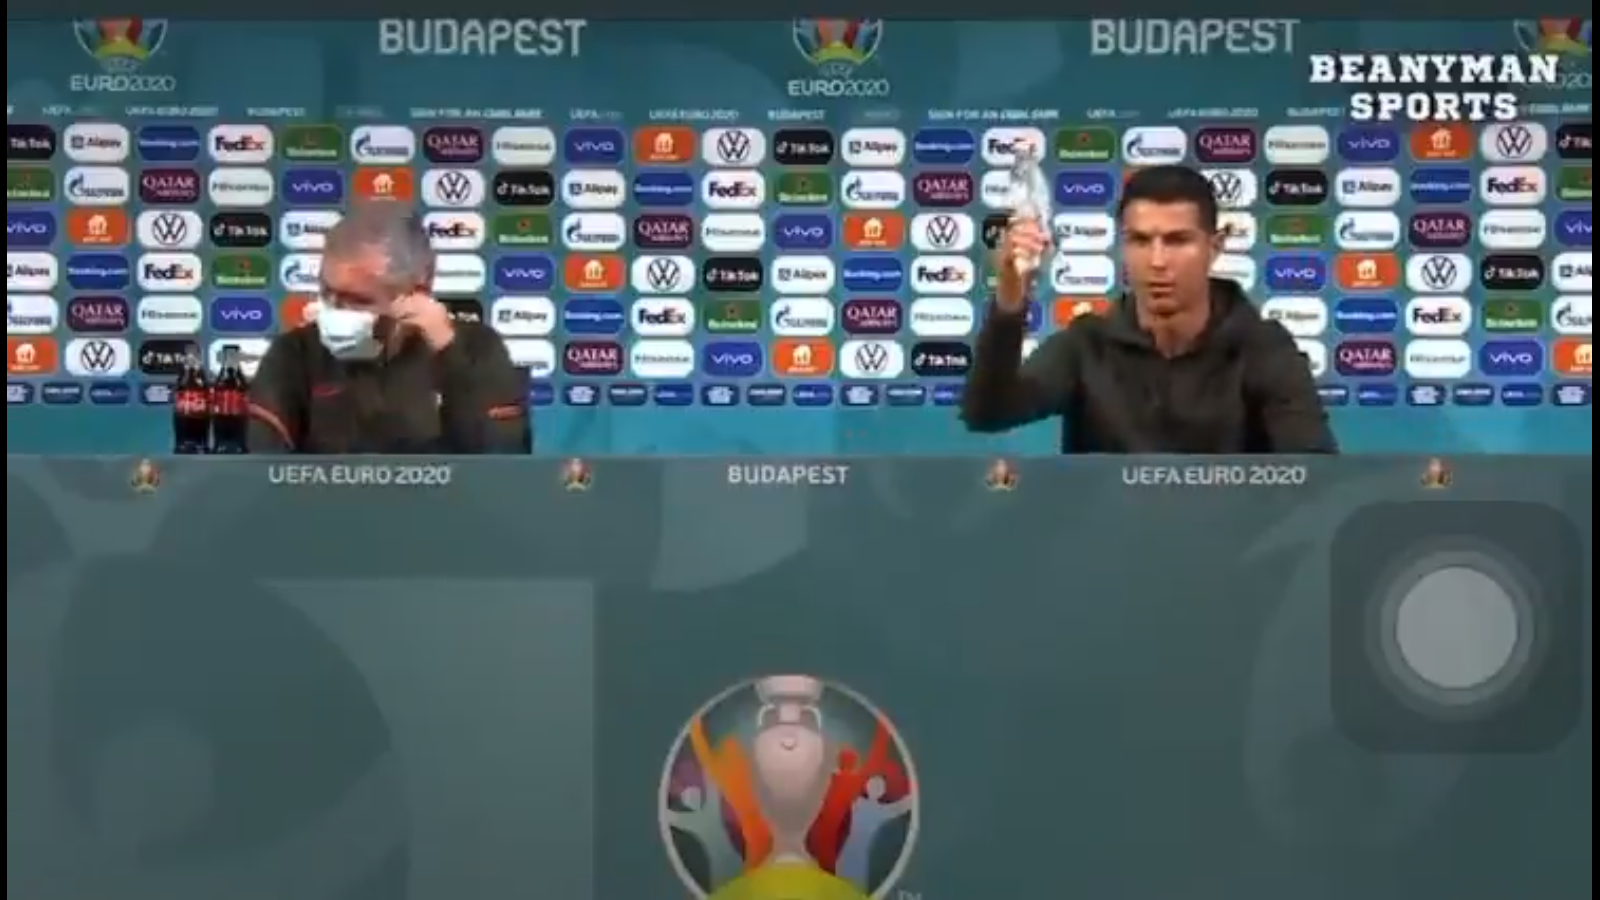 Cristiano Ronaldo levantando una botella de agua después de quitar dos de coca cola